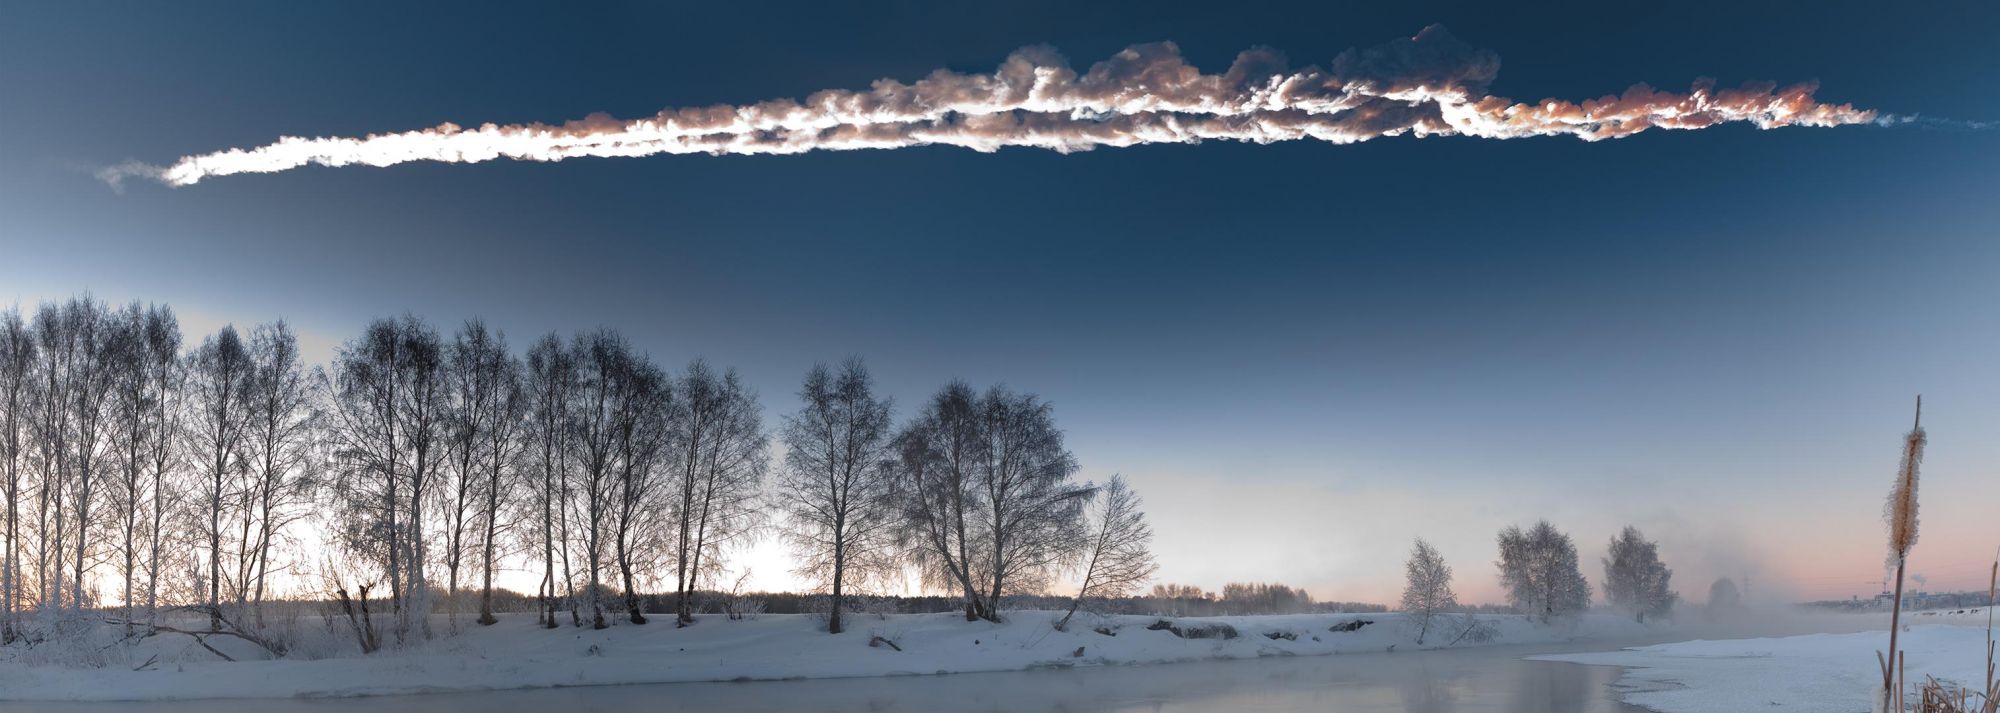 La double traînée de la météorite de Tcheliabinsk photographiée alors qu'elle fendait le ciel de l'Oural, le matin du 15 février 2013. L'analyse des fragments raconte l'histoire de ce gros rocher depuis qu'il a quitté la ceinture principale d'astéroïdes.&nbsp;© M. Ahmetvaleev